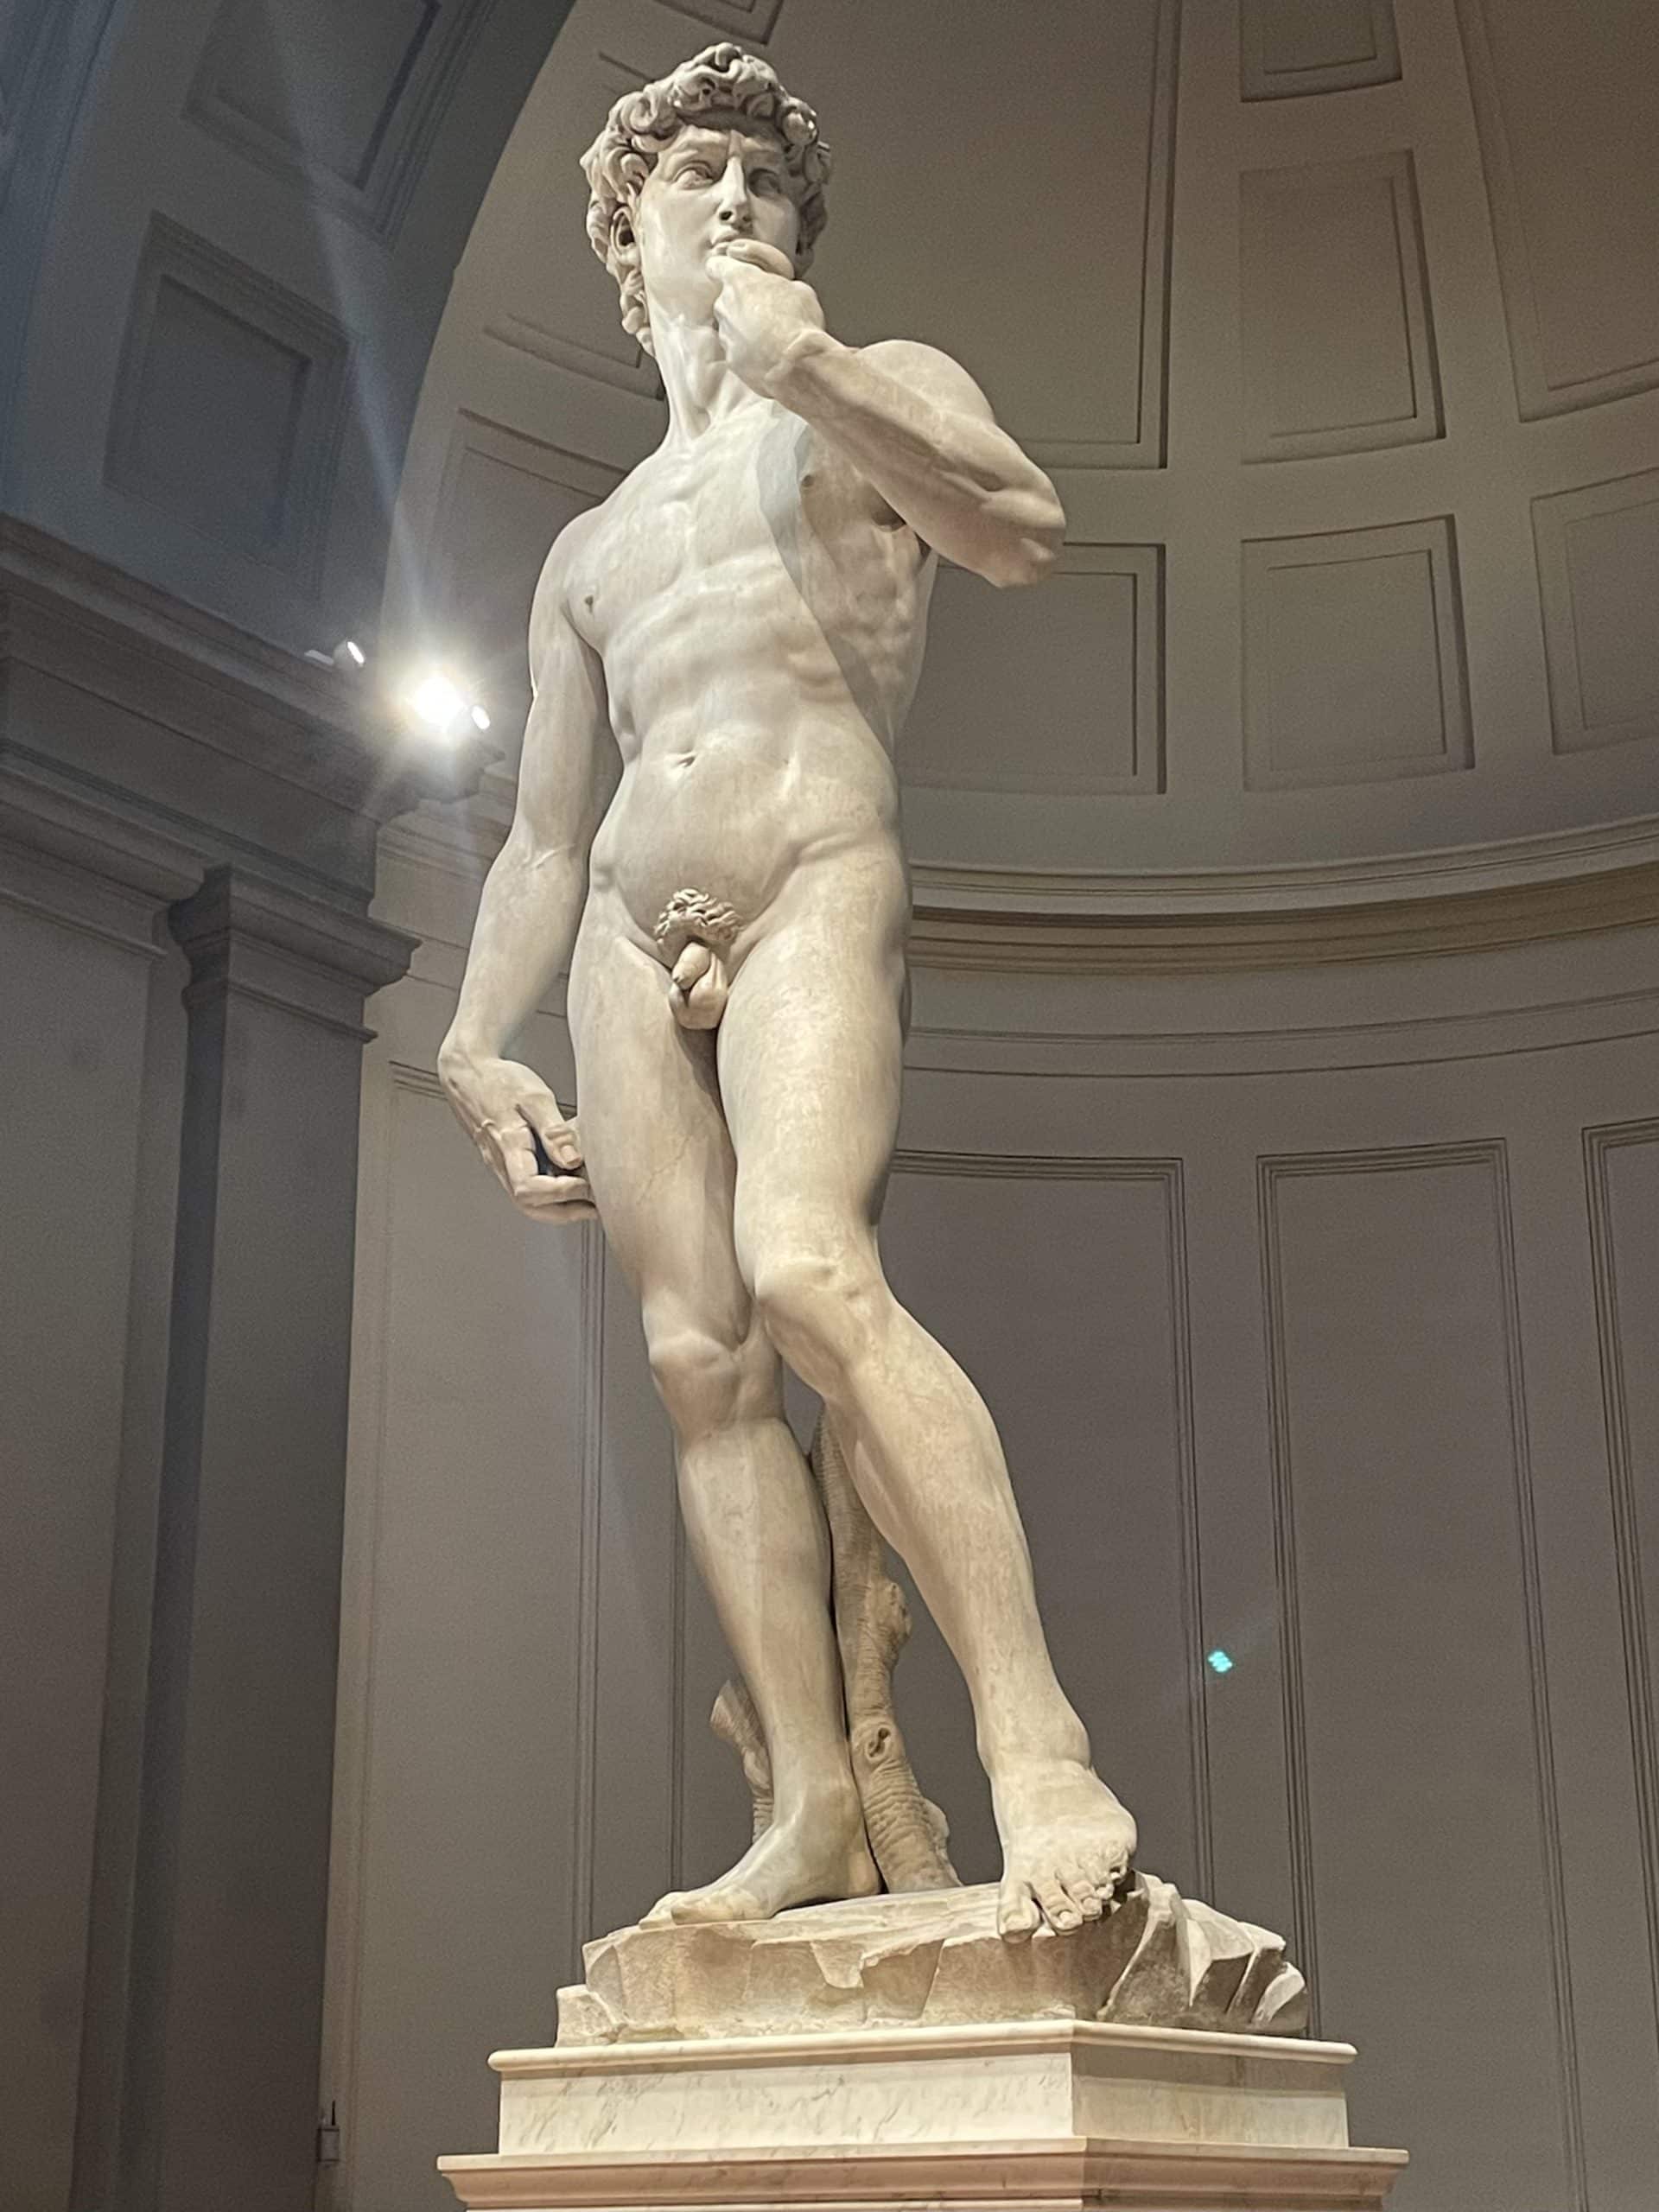 Der David von Michelangelo, zwischen 1501 und 1504 in Florenz entstanden, ist die erste Monumentalstatue der Hochrenaissance und gilt als die bekannteste Skulptur der Kunstgeschichte. 